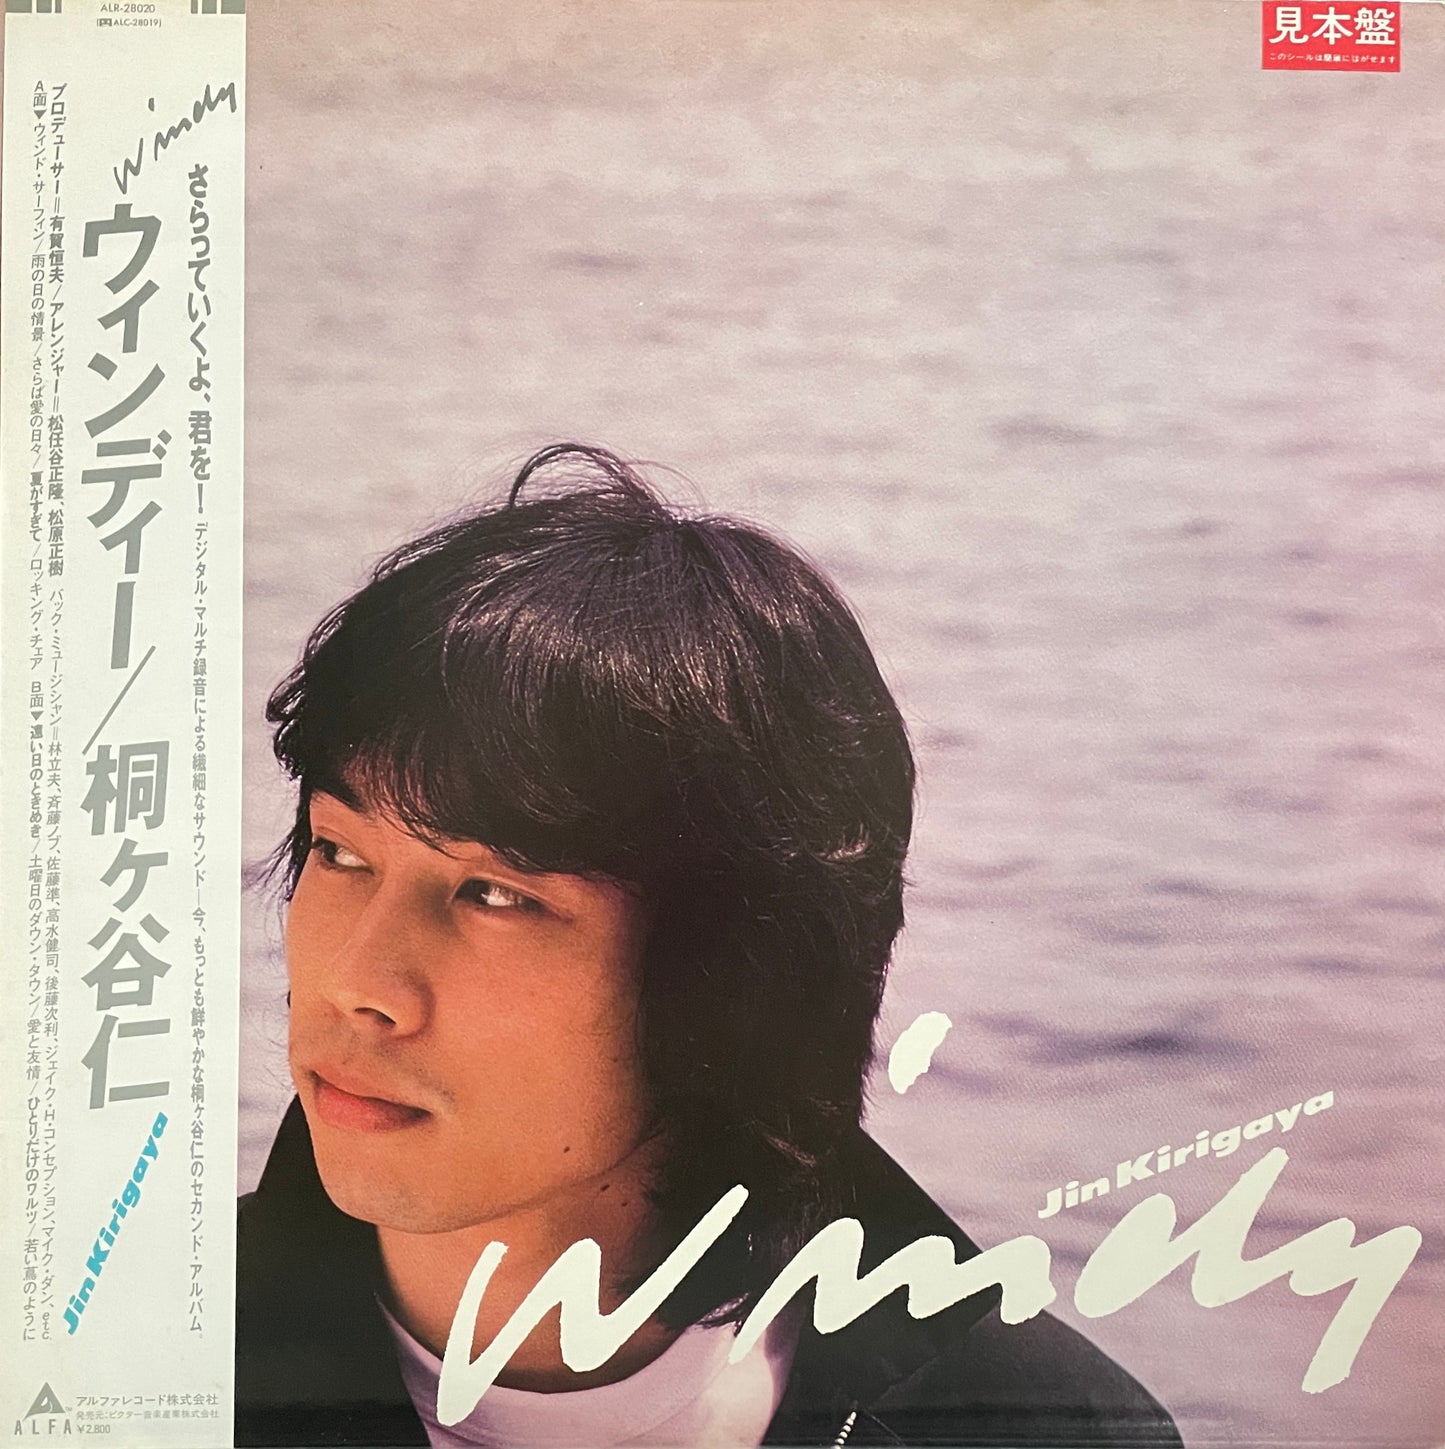 Jin Kirigaya "Windy" (1981)